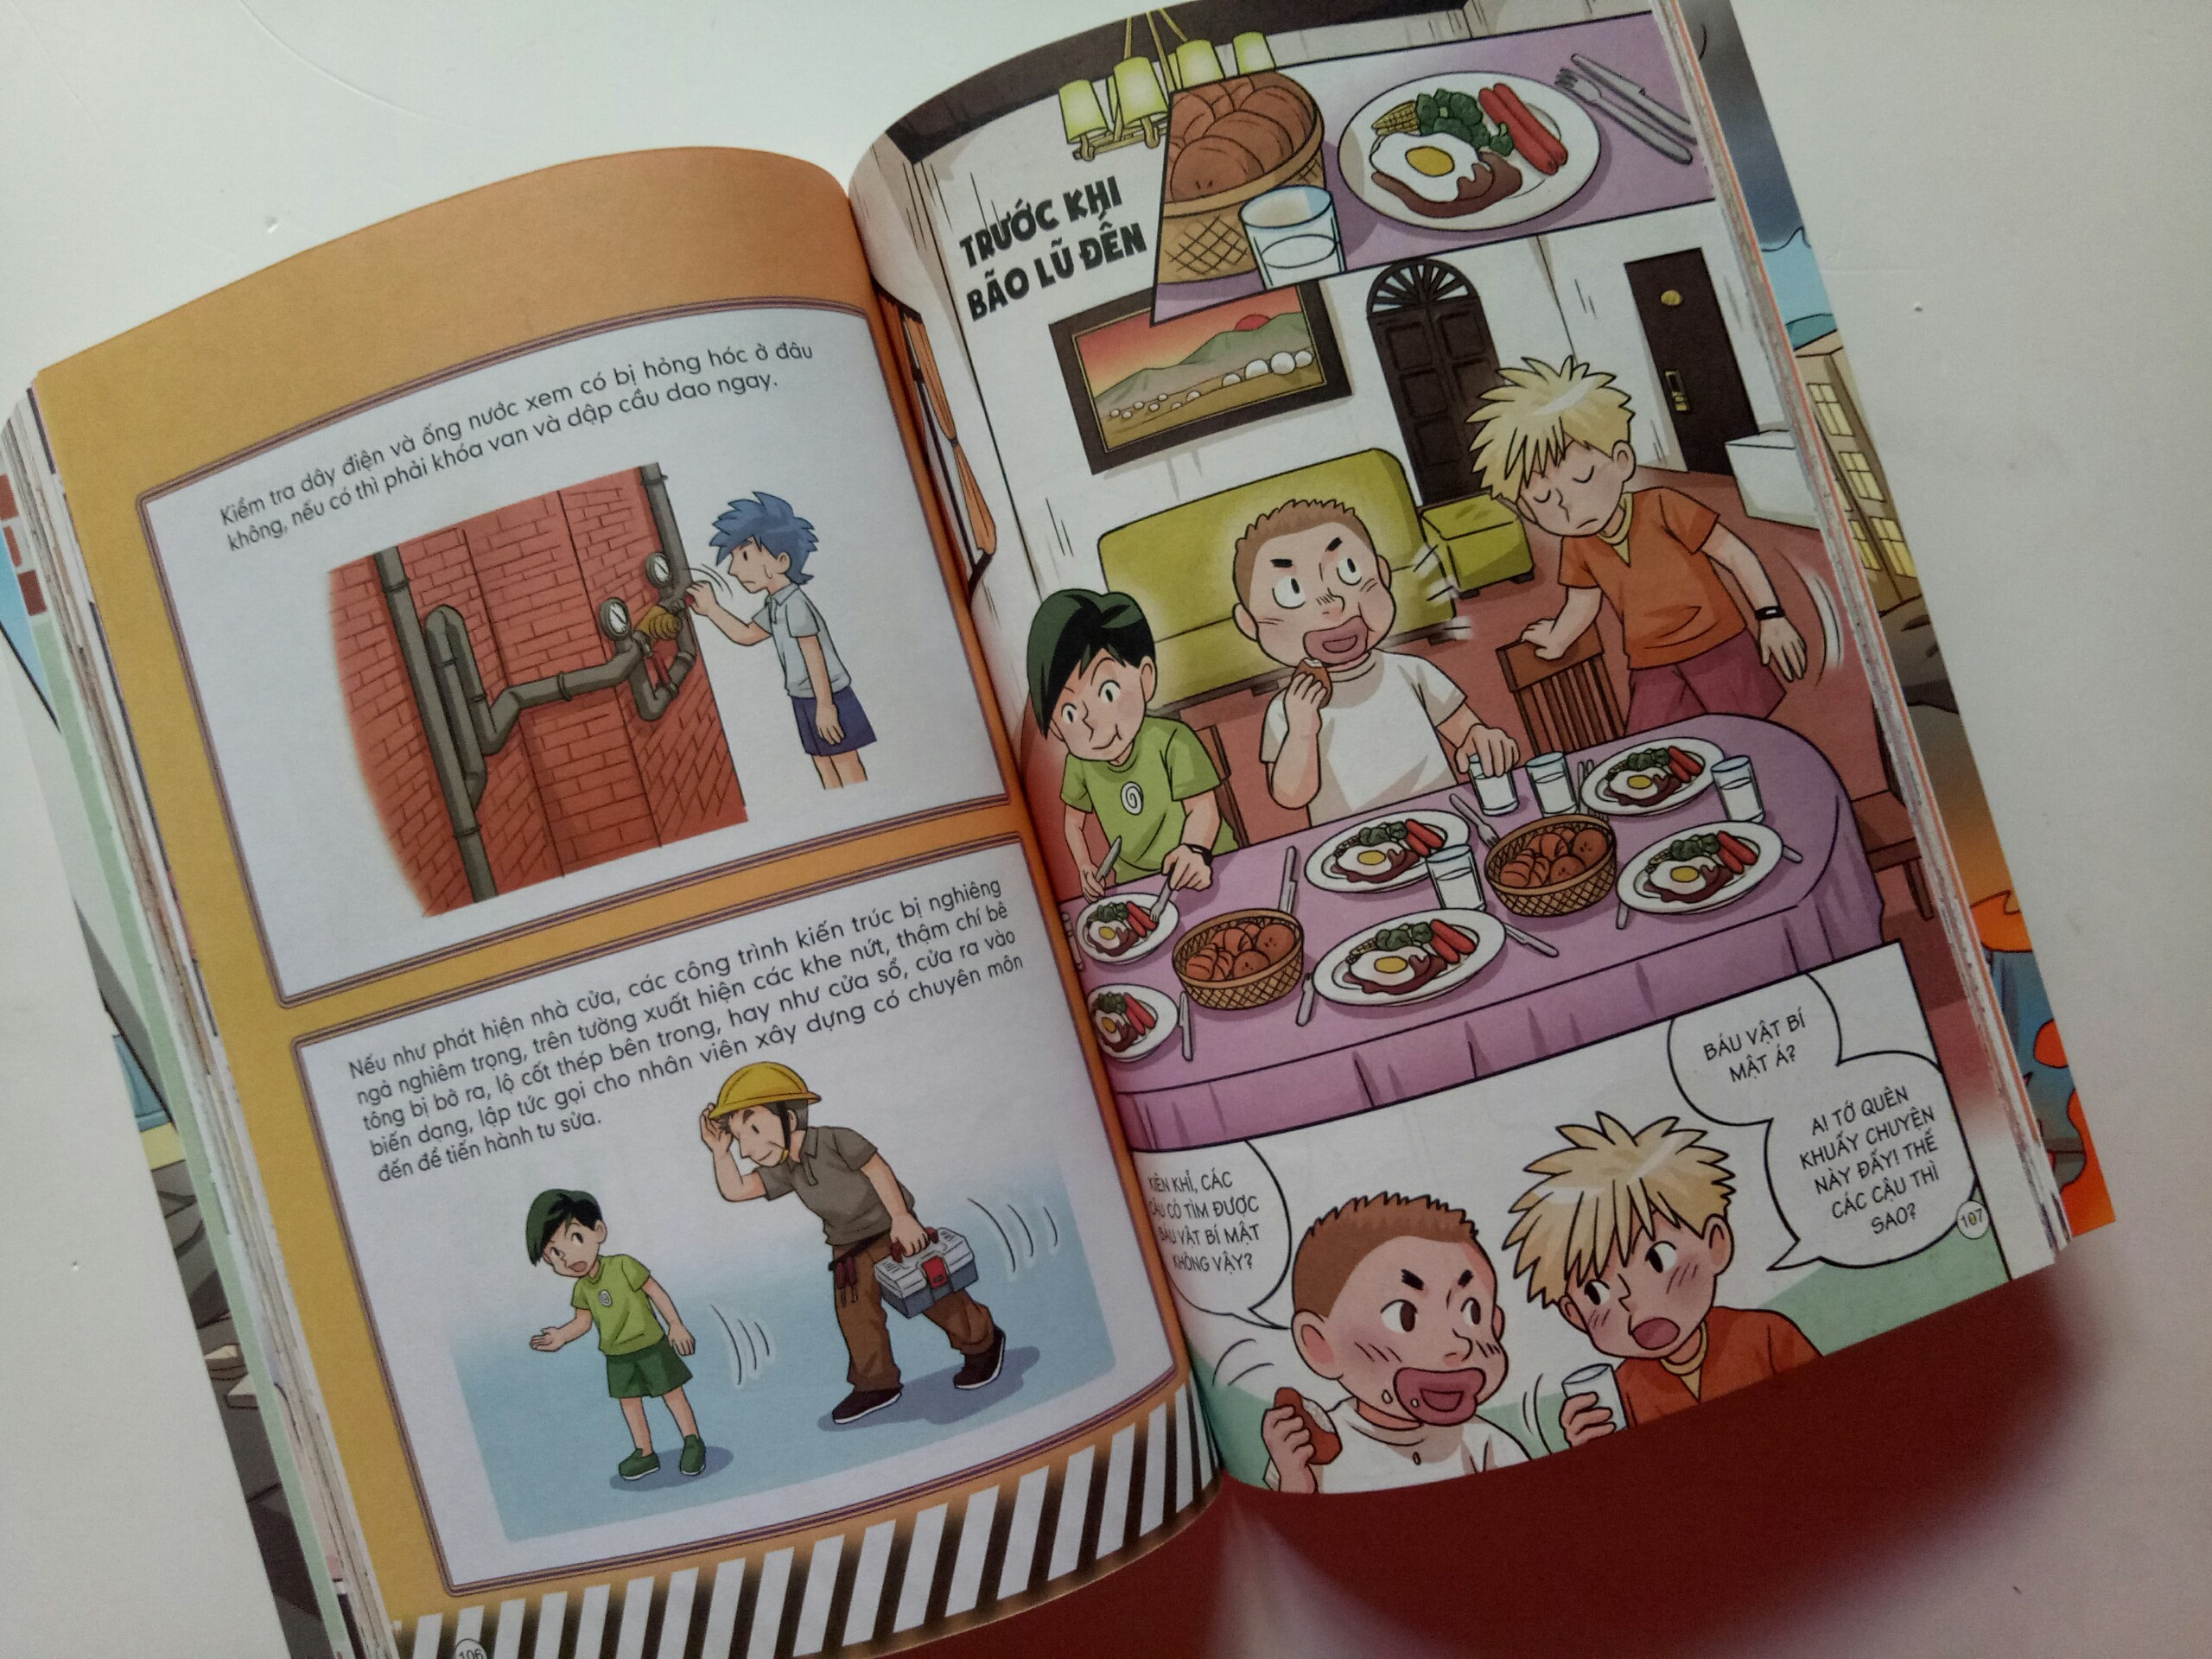 Sách - Thoát nạn trong tích tắc - Đối mặt với hỏa hoạn, lũ lụt, động đất - Dành cho bé từ 5-15 tuổi - Đinh Tị Books